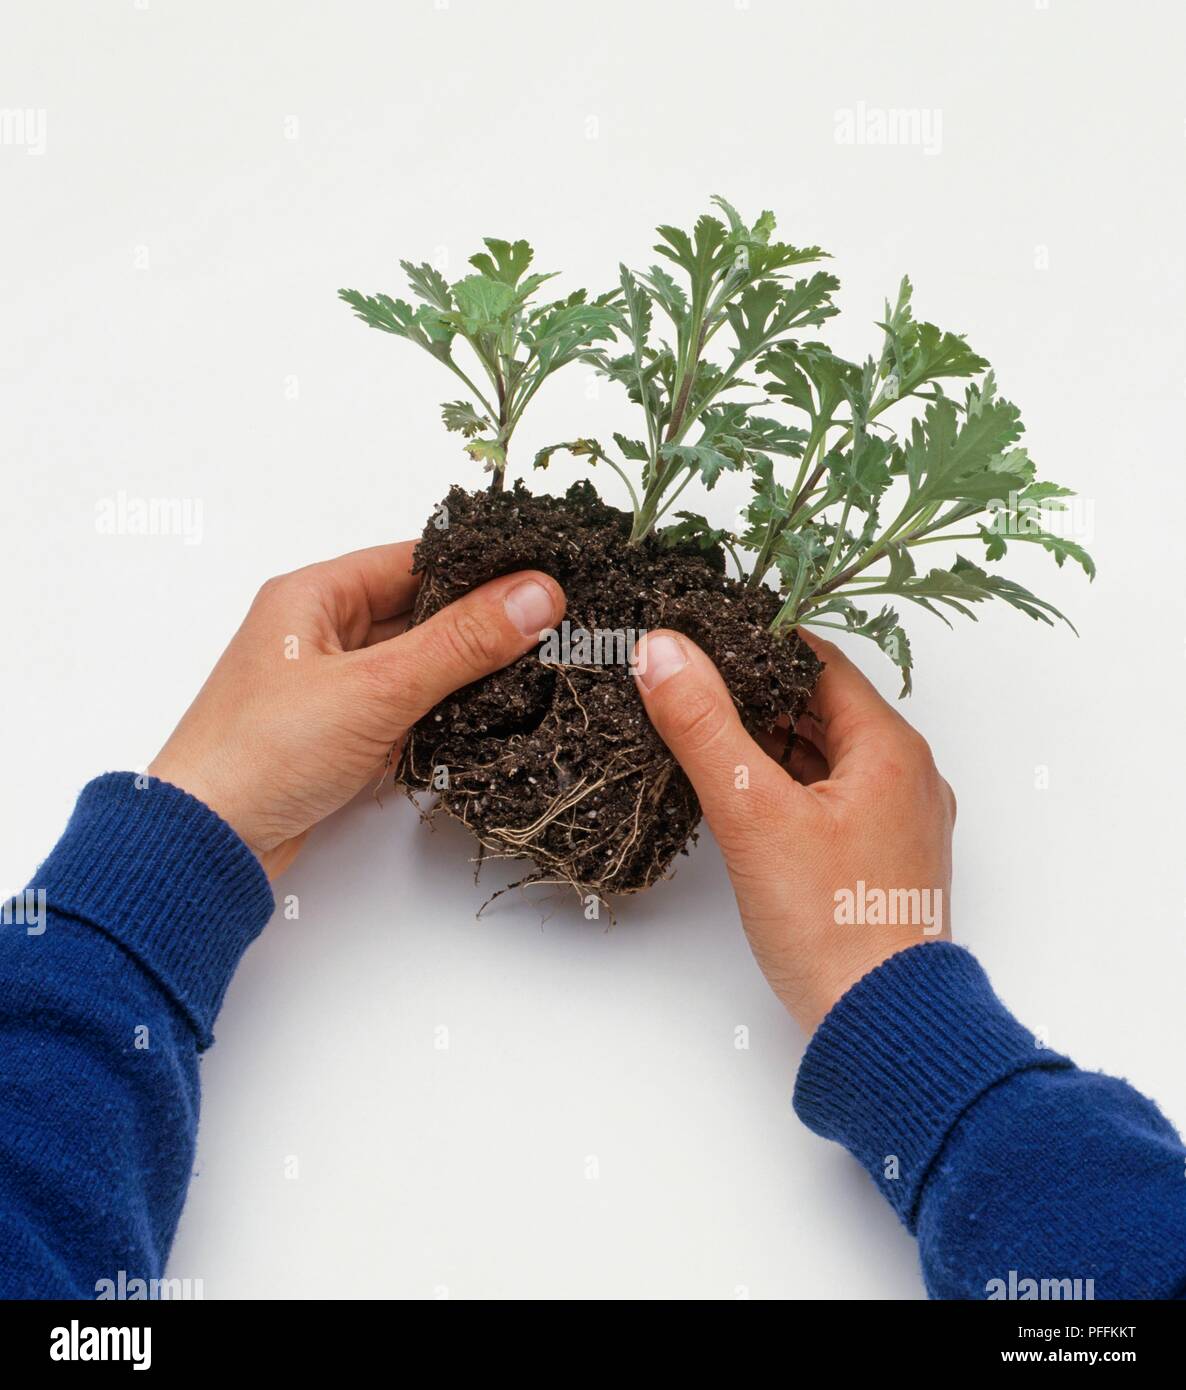 Hände Trennung verwurzelt Chrysantheme Stecklinge, close-up Stockfoto